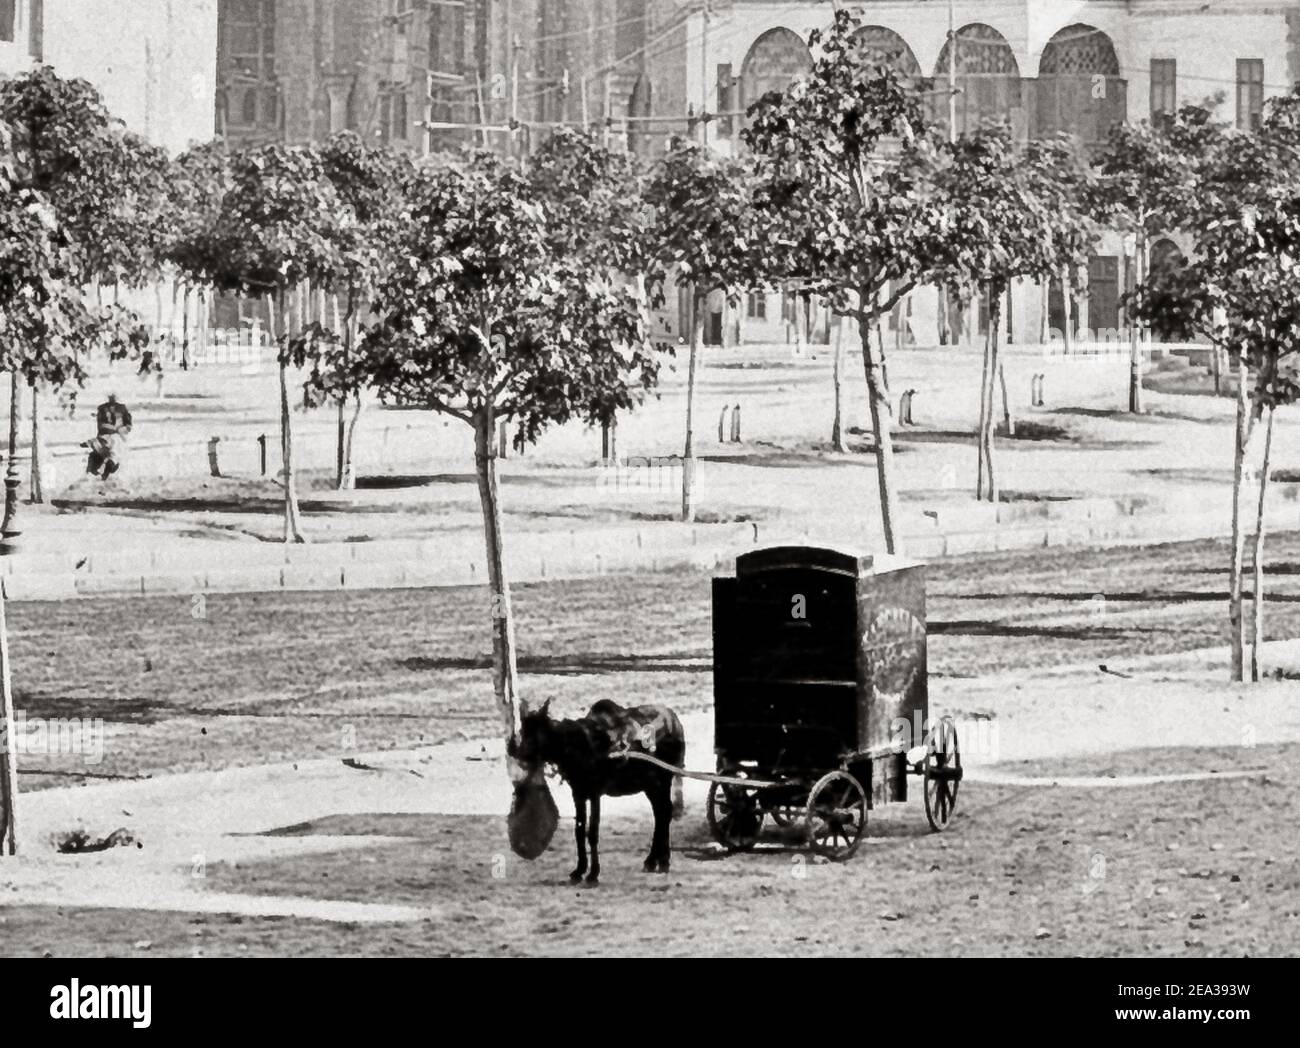 Photo fin du XIXe siècle Mosquée Sultan Hassan, le Caire, vers 1880, frères Zangaki photographes, photographie chambre noire, chariot de mule. Banque D'Images